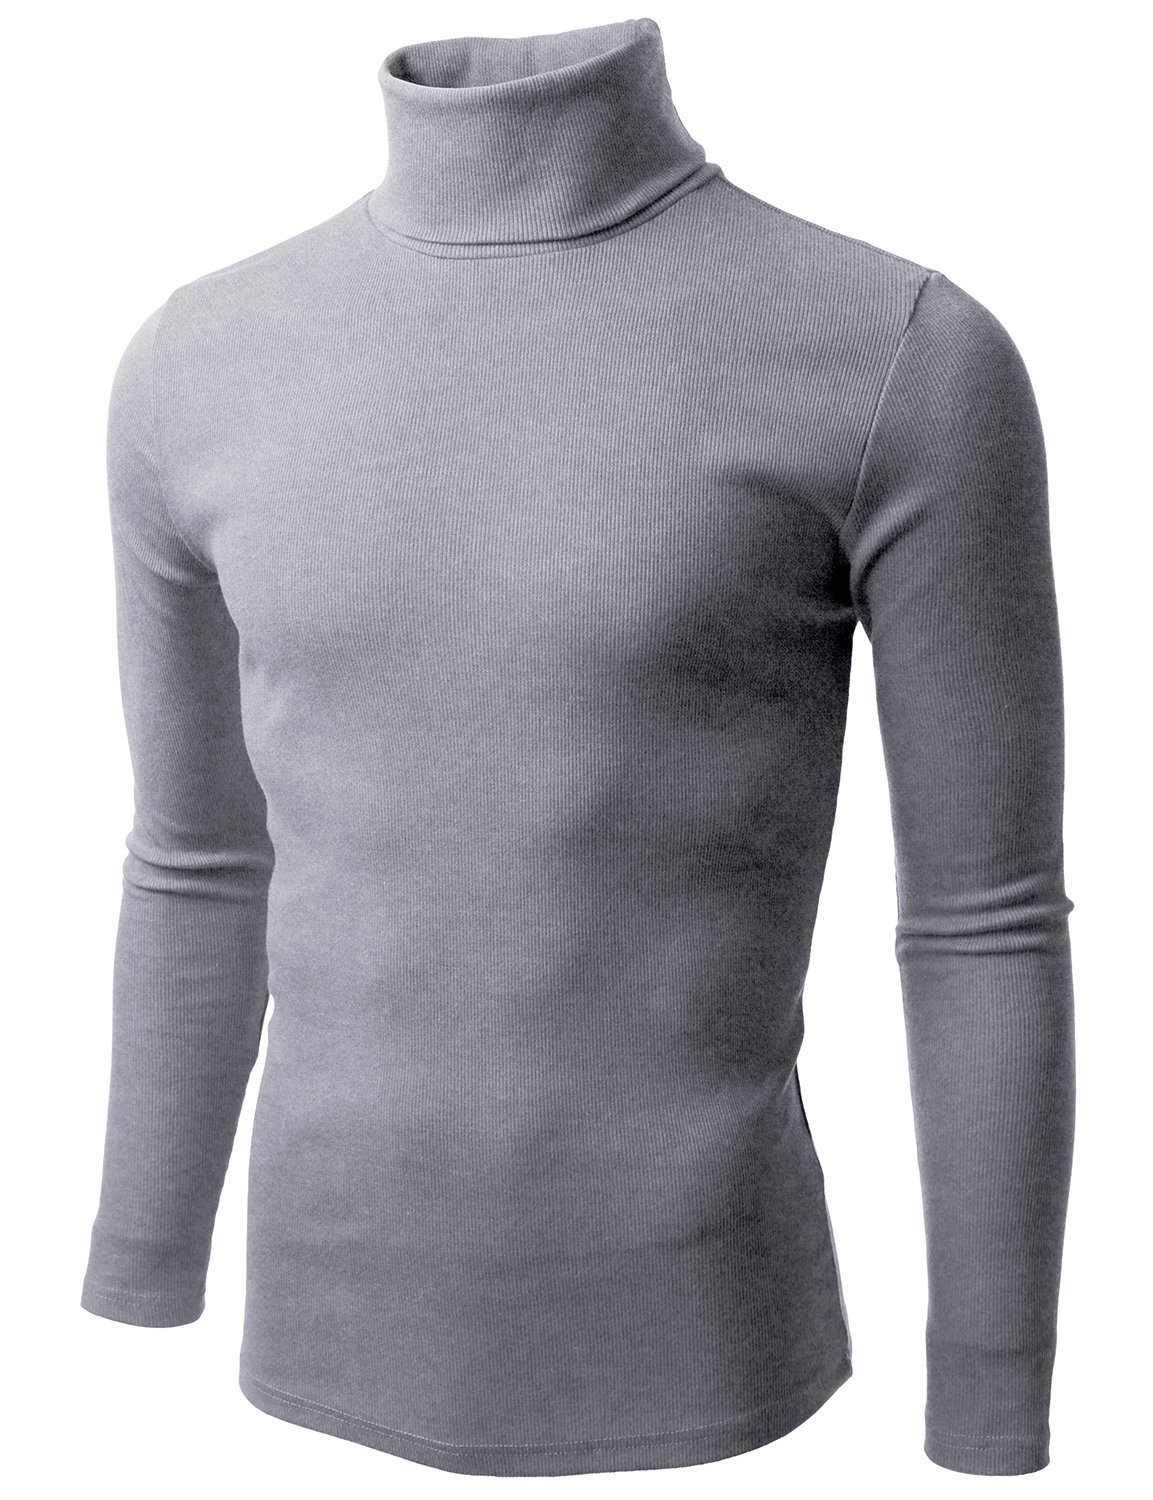 Doublju Mens Long Sleeve Mock Neck Sweater